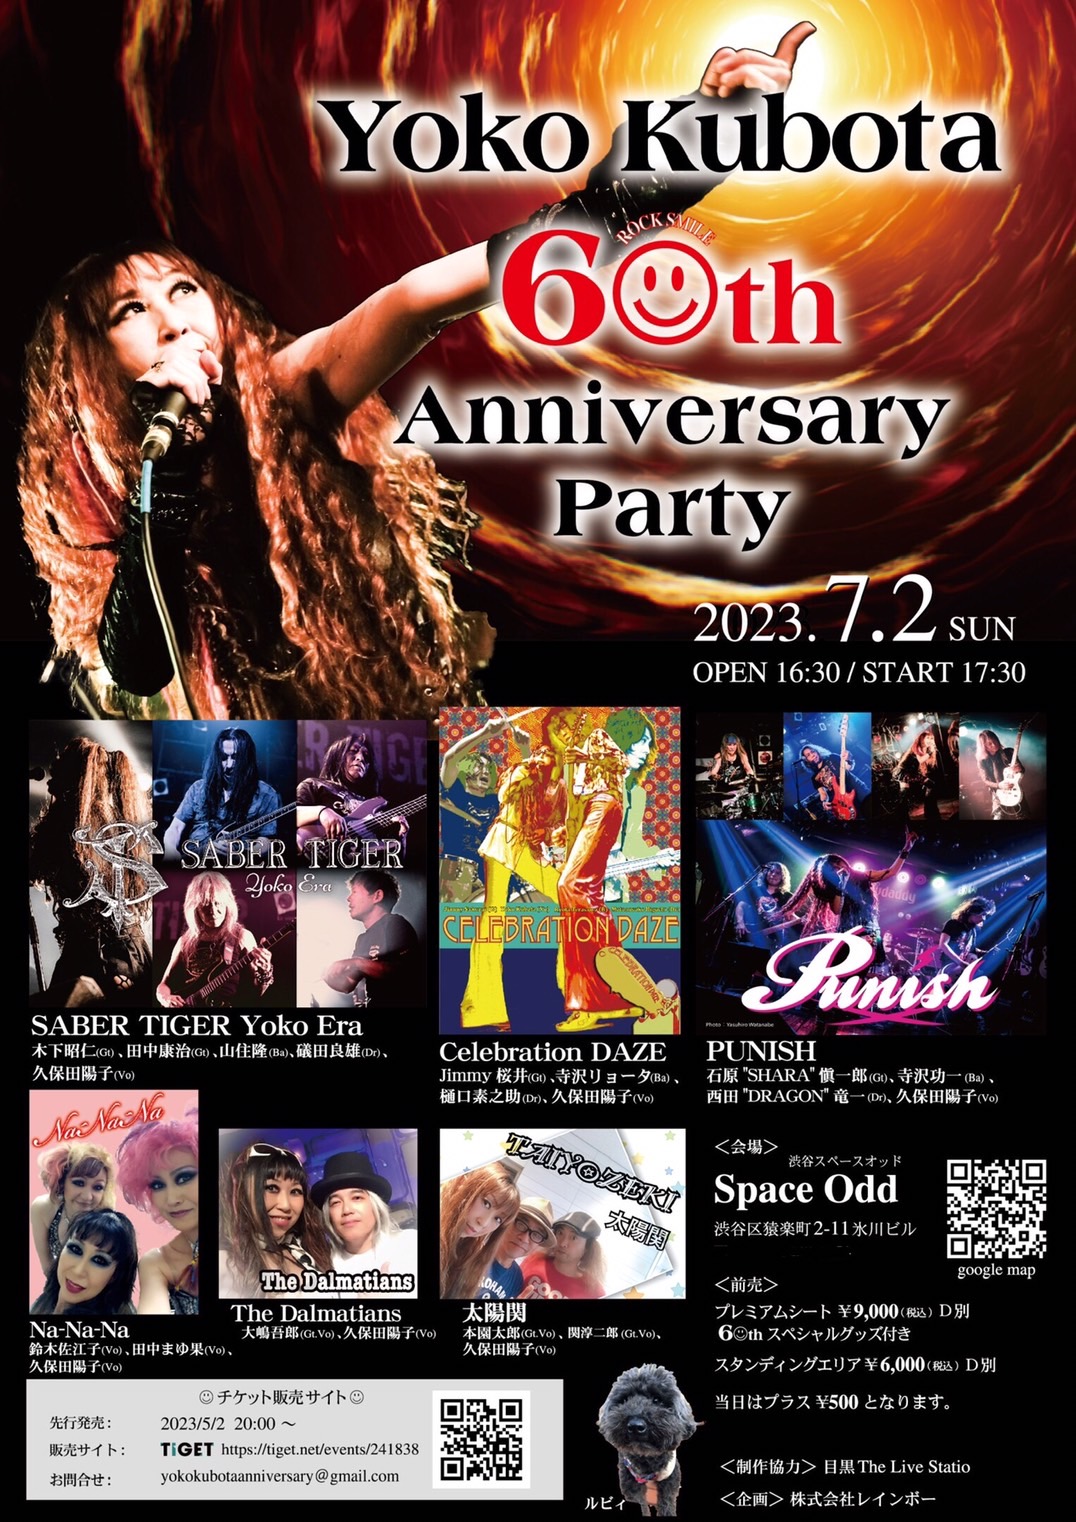 YOKO KUBOTA 6☺th Anniversary Party